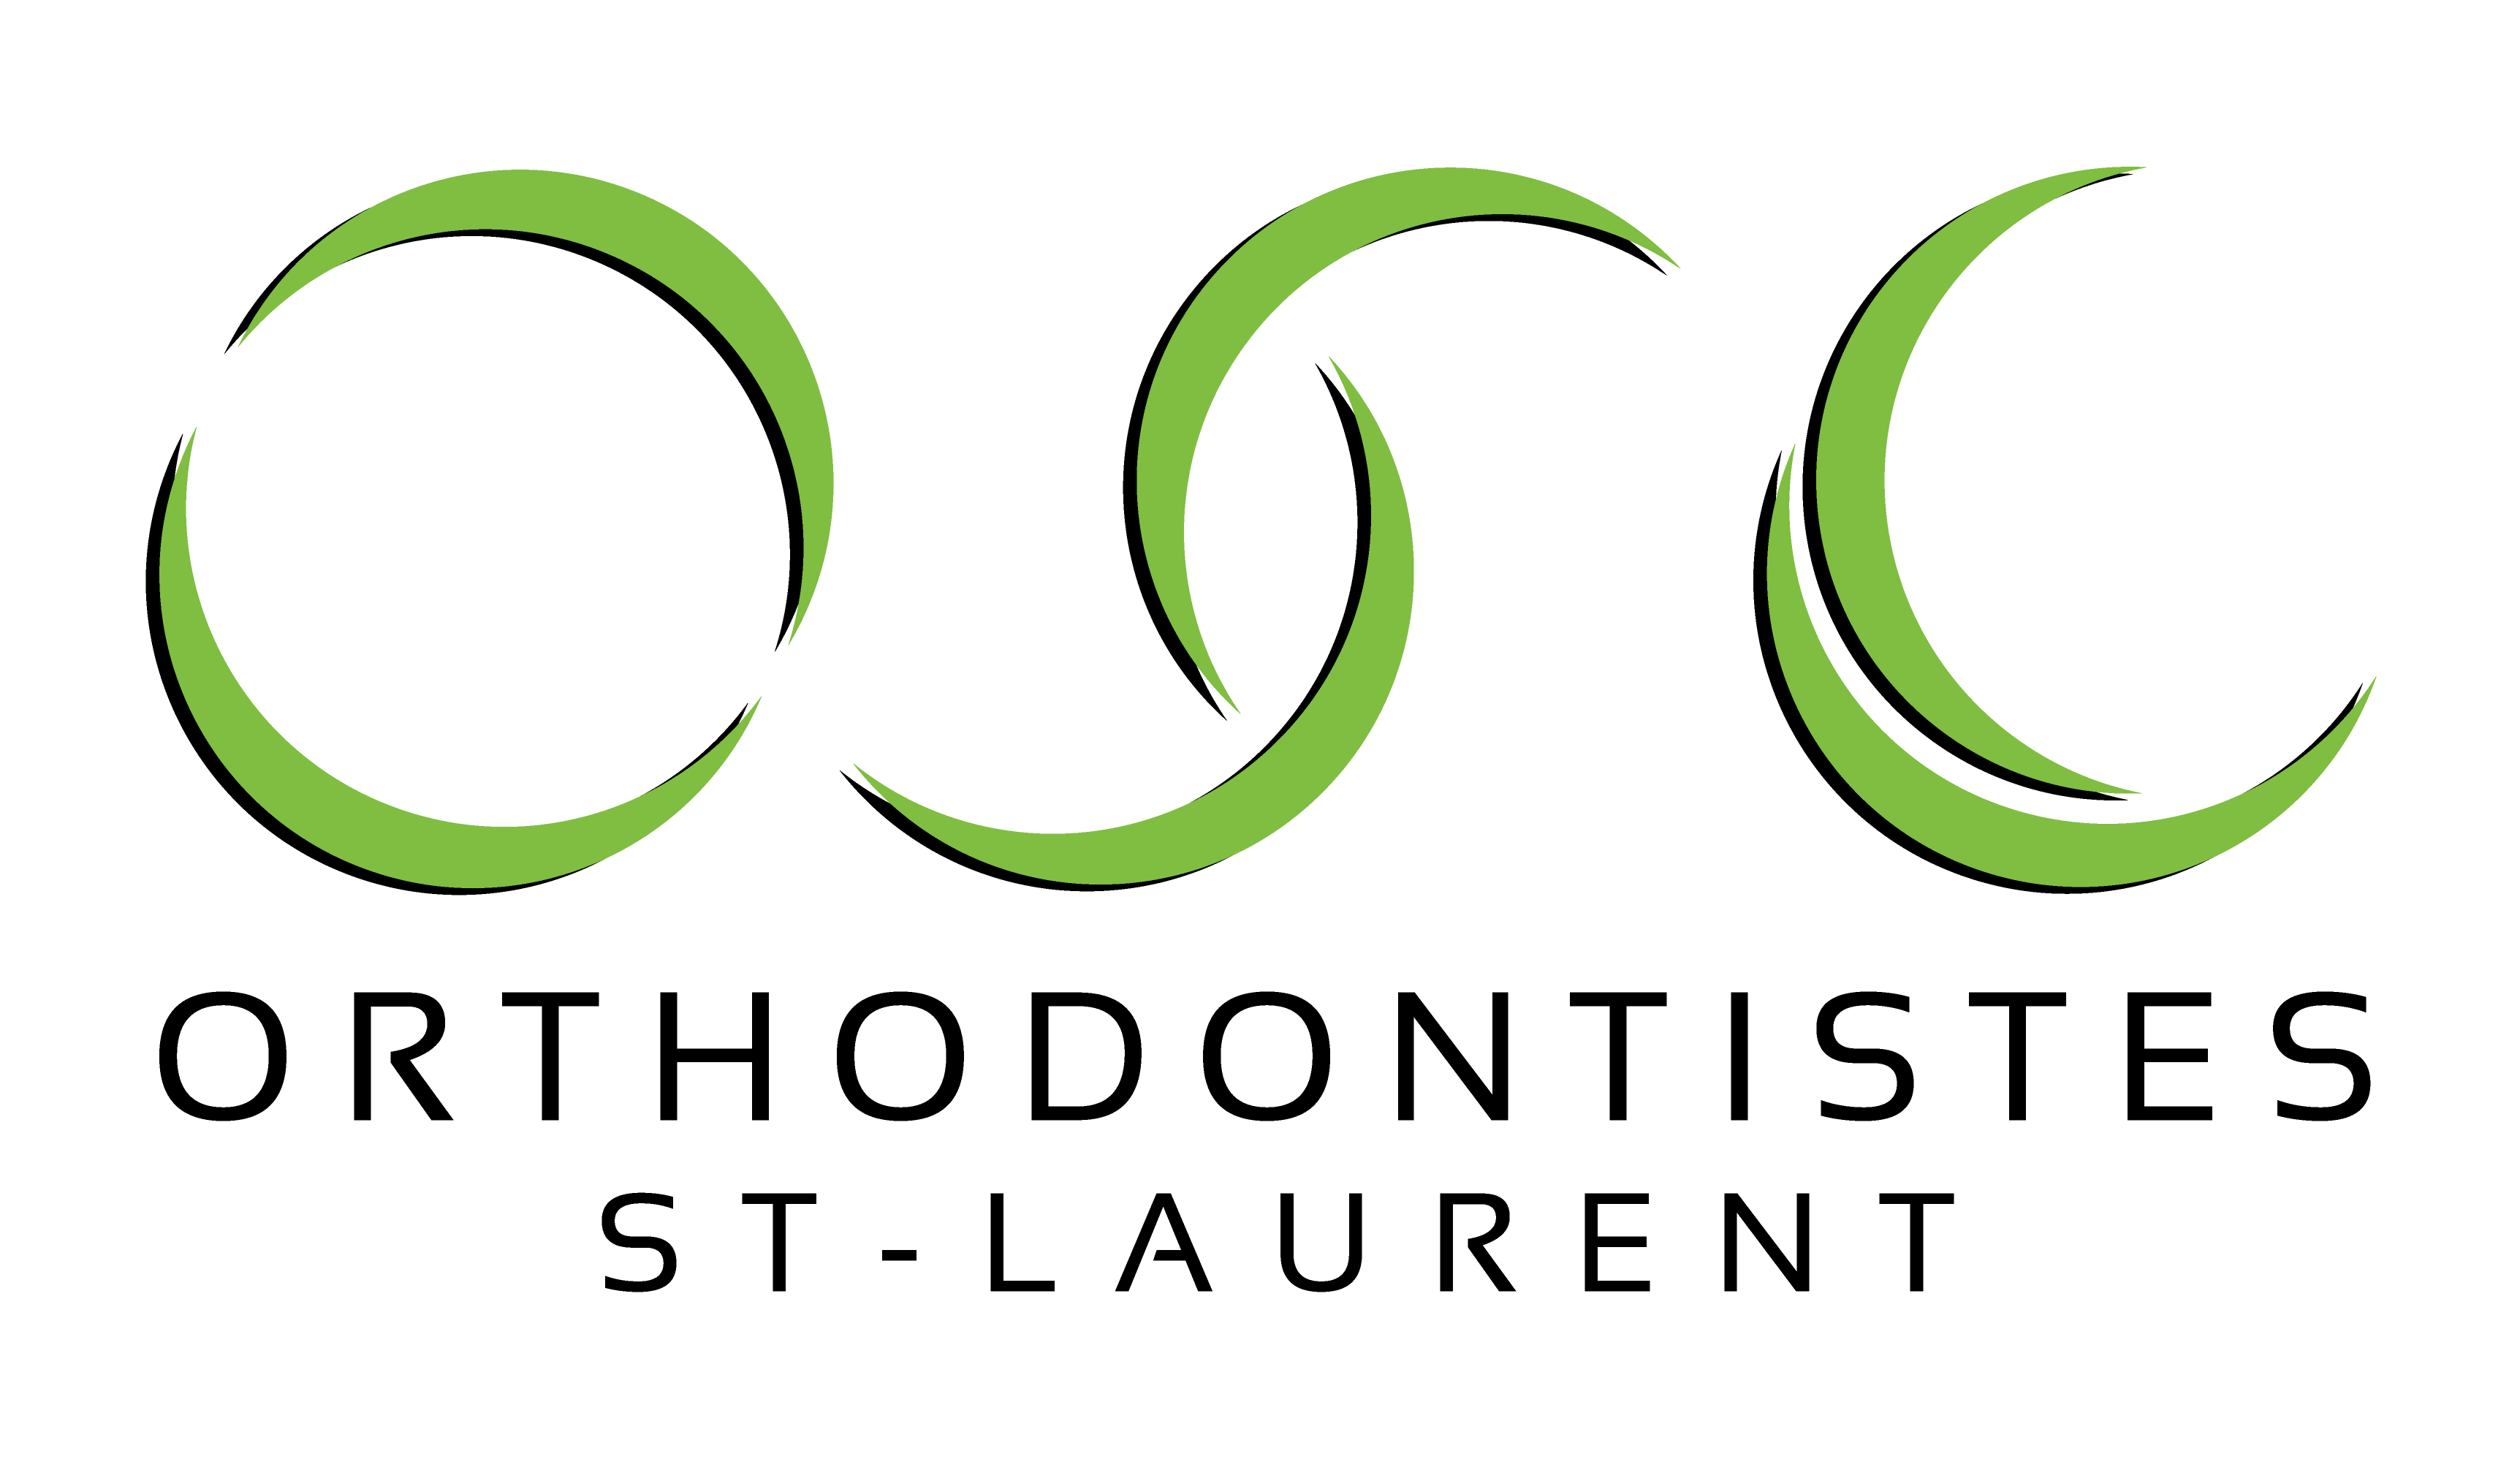 Logo-client-Carrière Dentaire-0